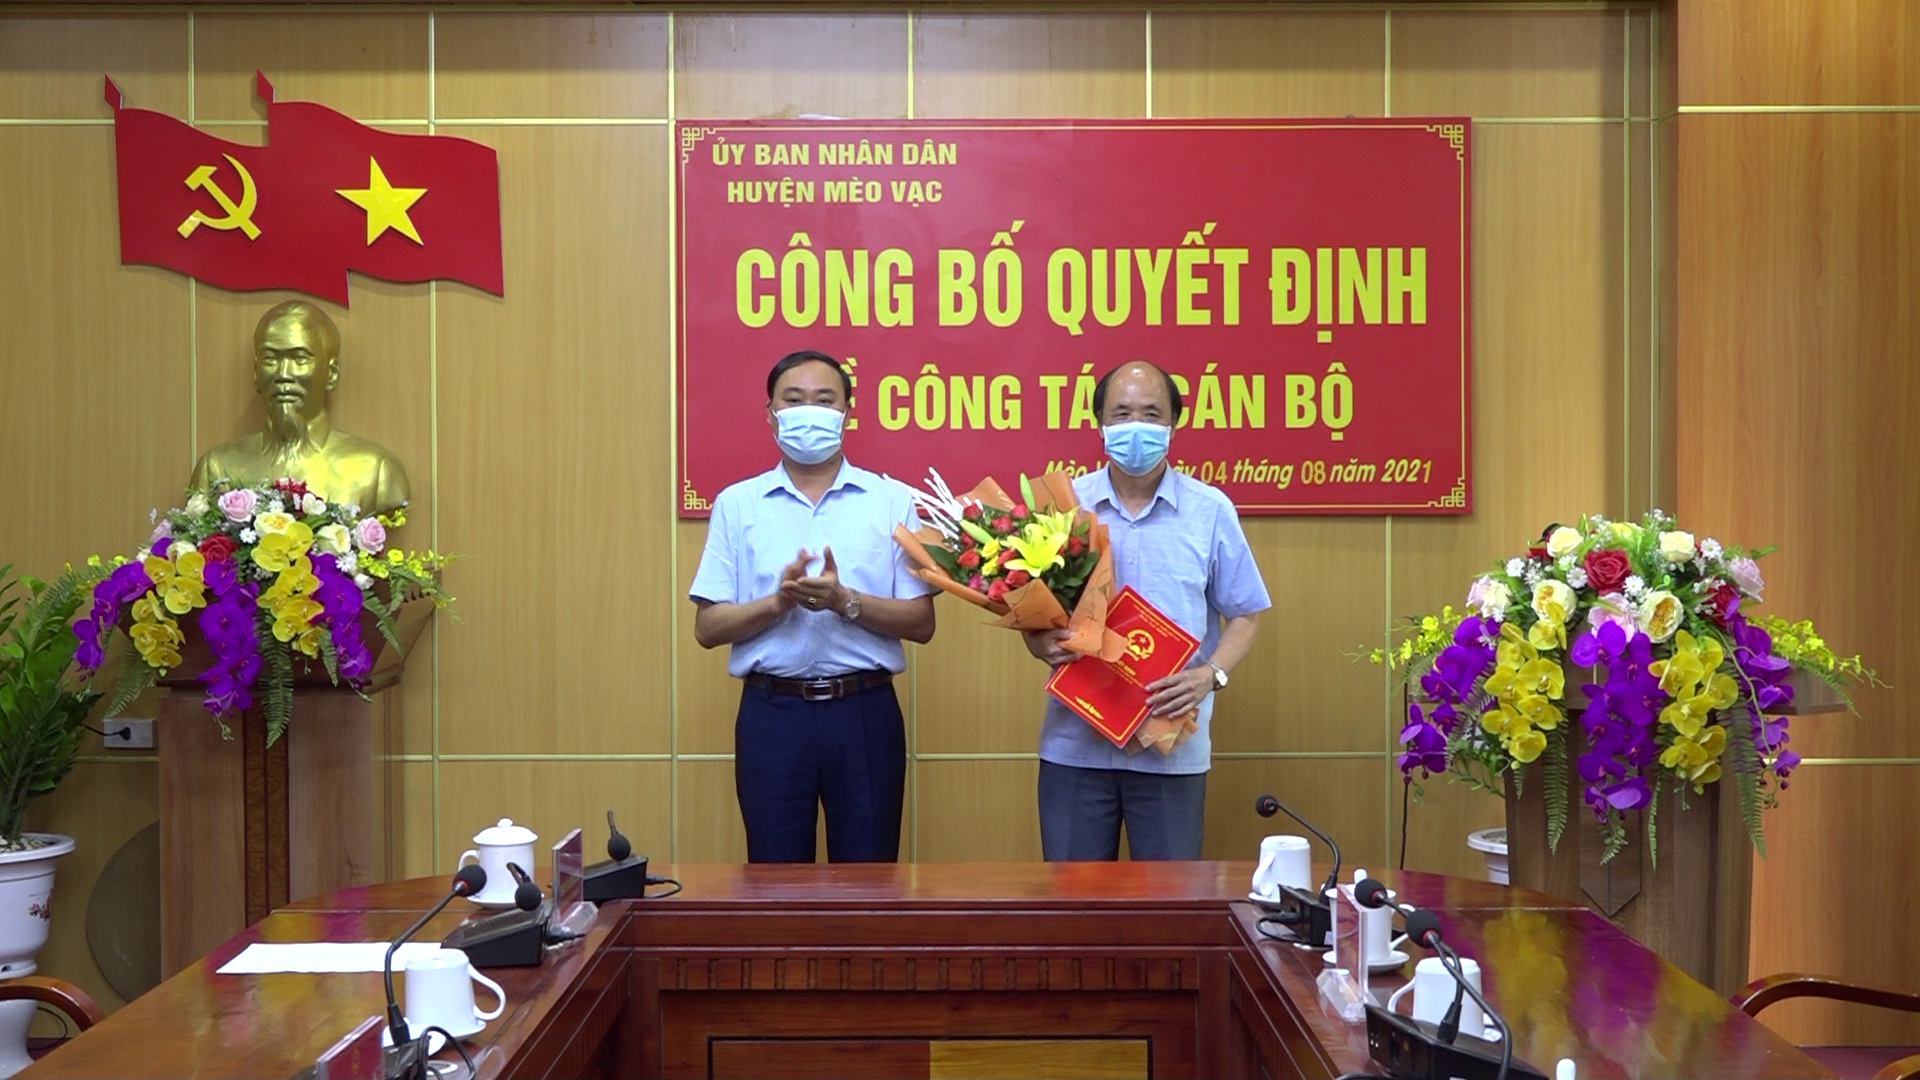 Đồng chí Nguyễn Cao Cường, Phó Bí thư Huyện ủy, Chủ tịch UBND trao quyết định về công tác cán bộ